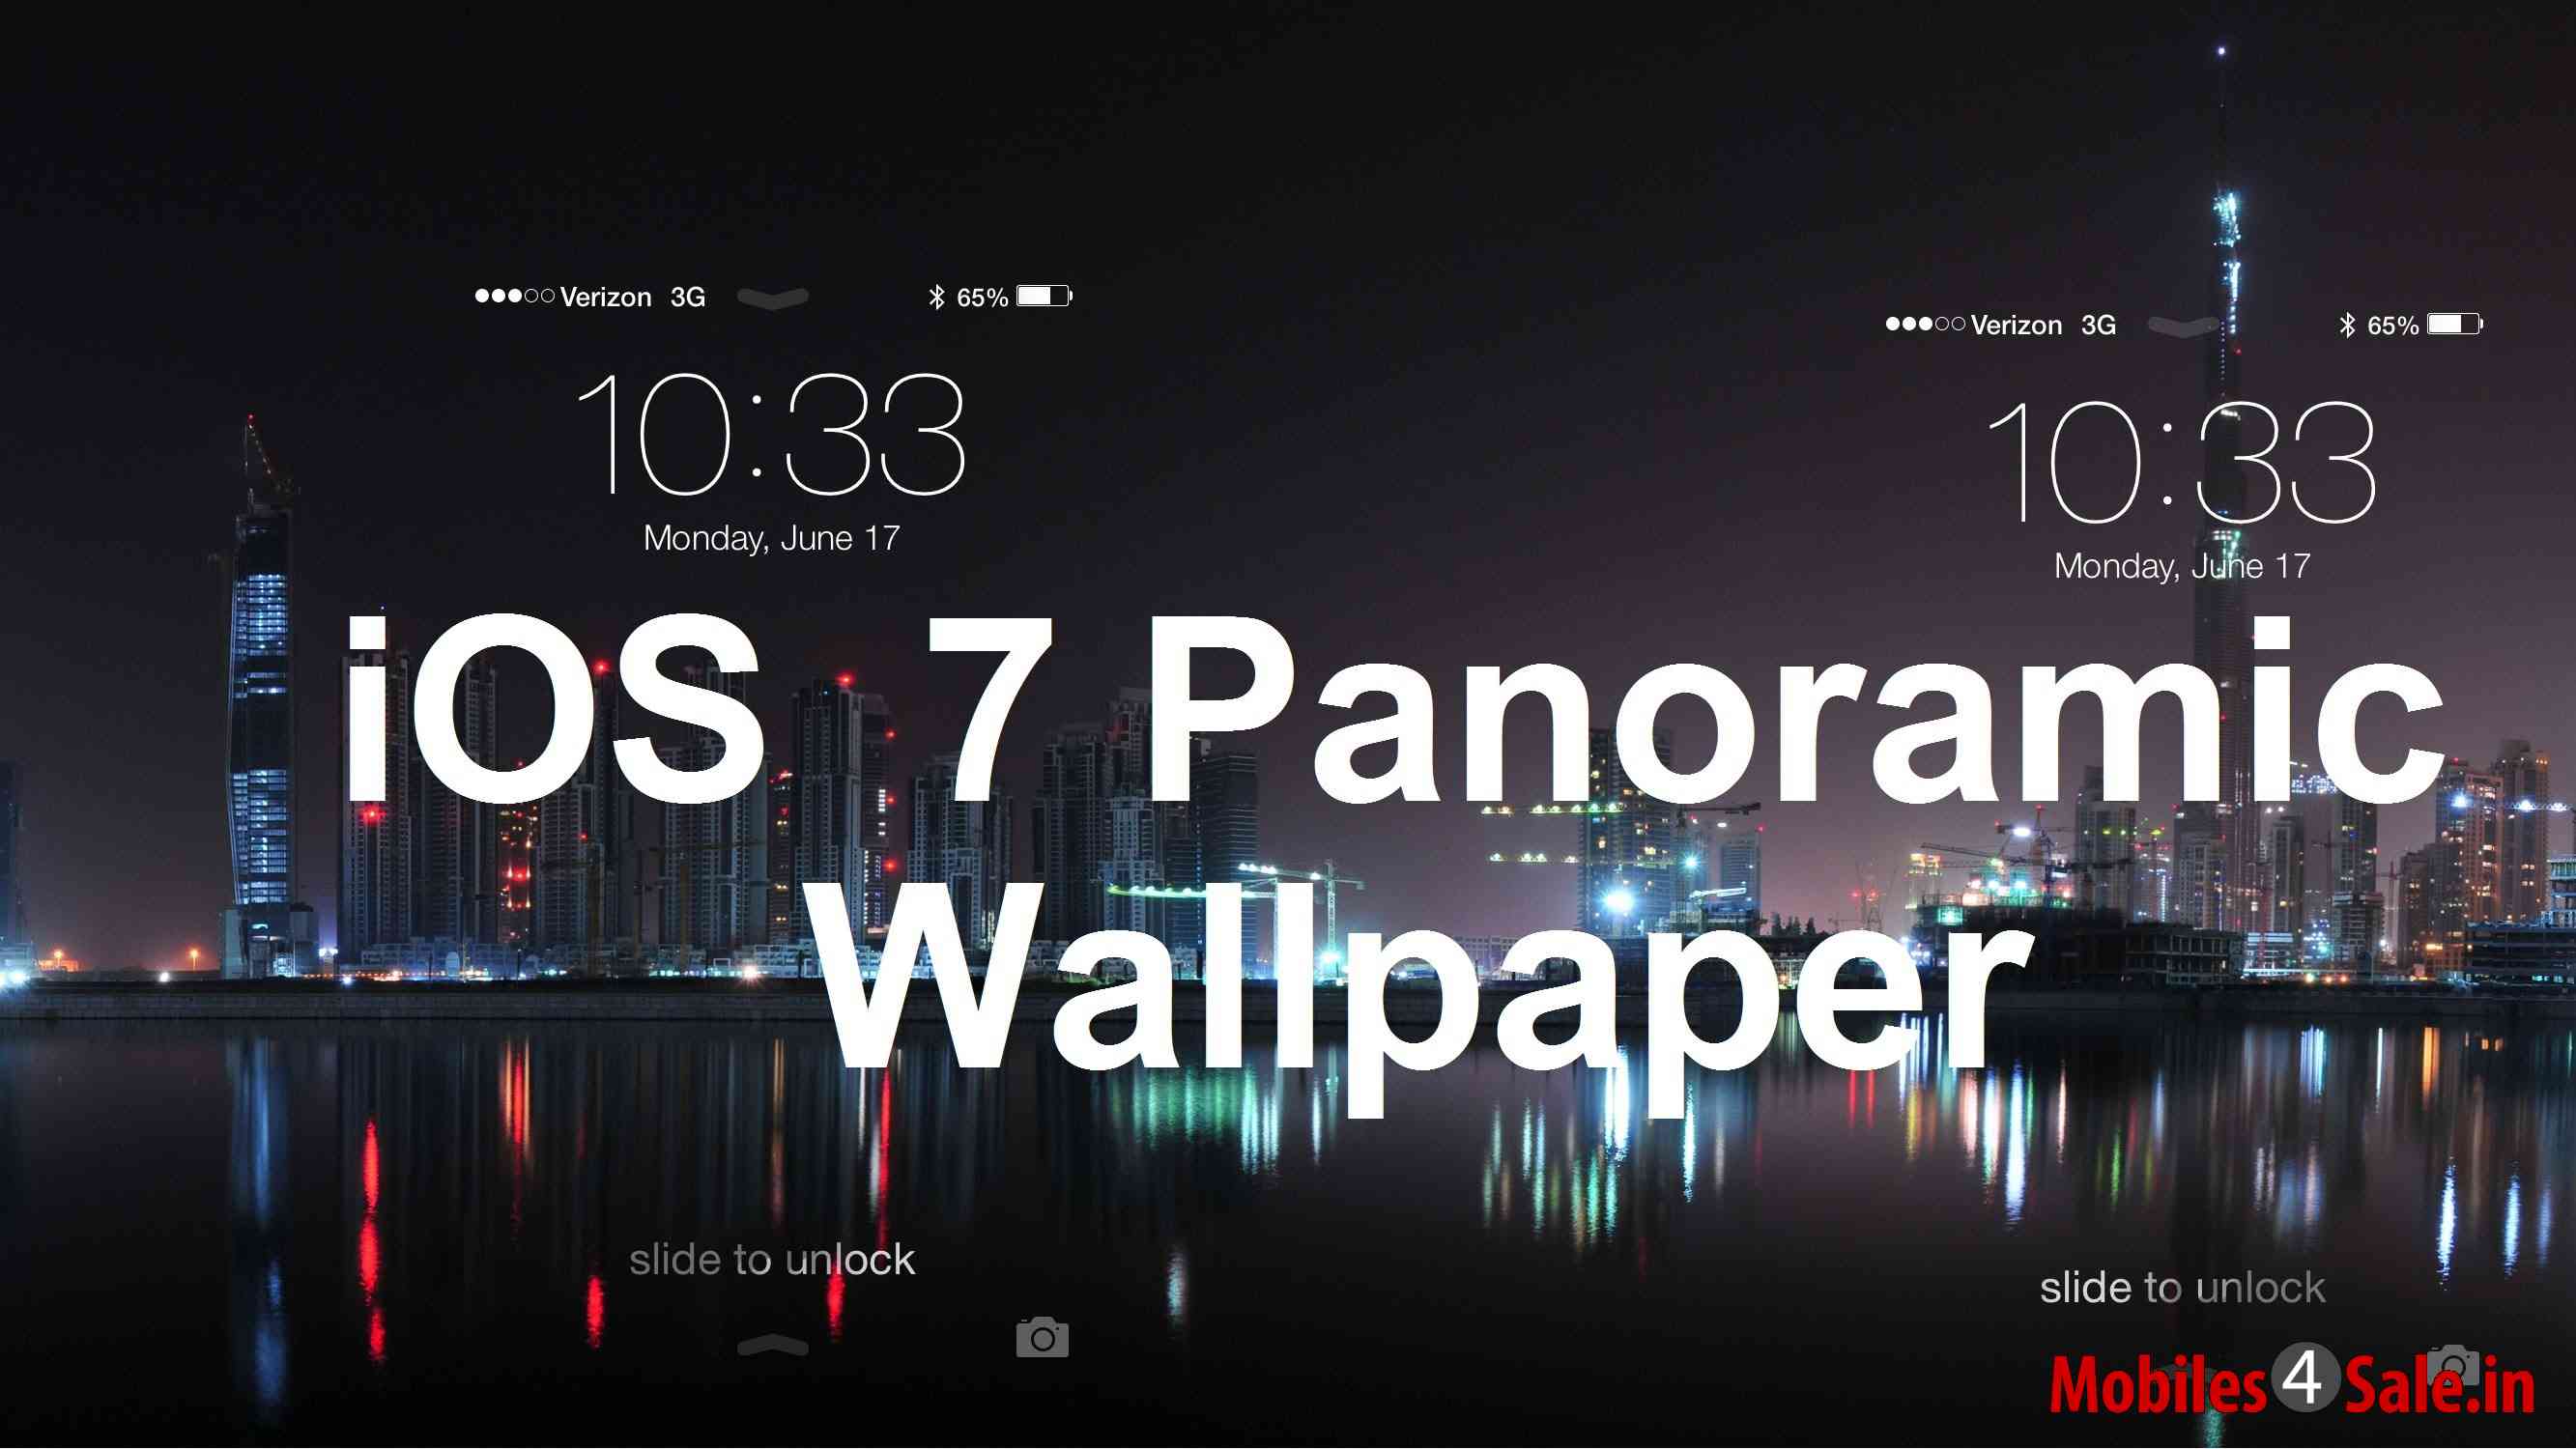 Panoramic Wallpaper